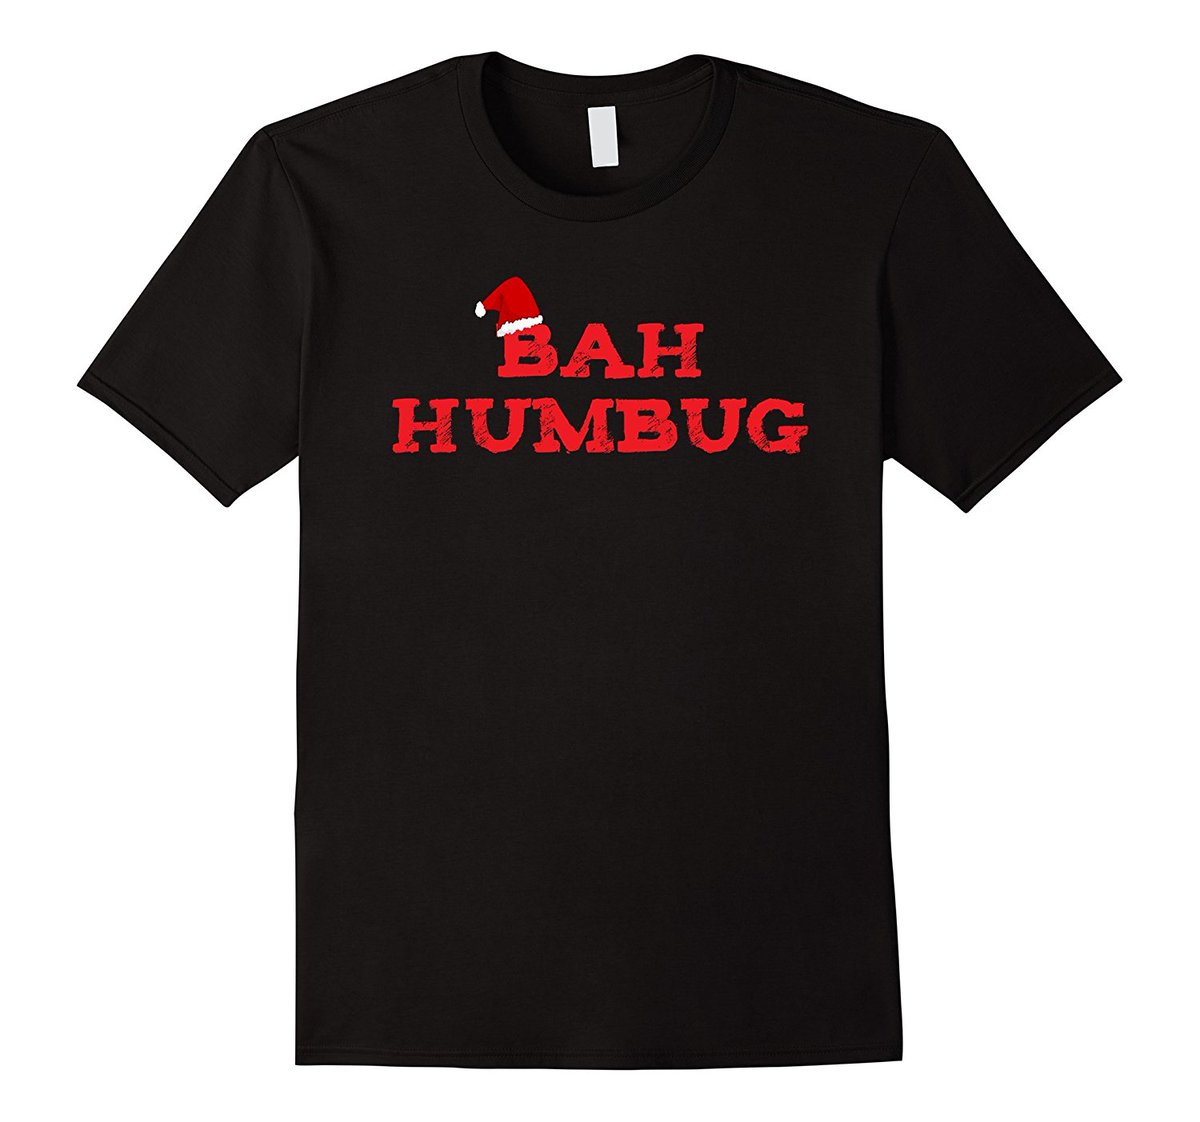 #Christmas Gift T-Shirt - Bah Humbug - amzn.to/2EUc6Ec #